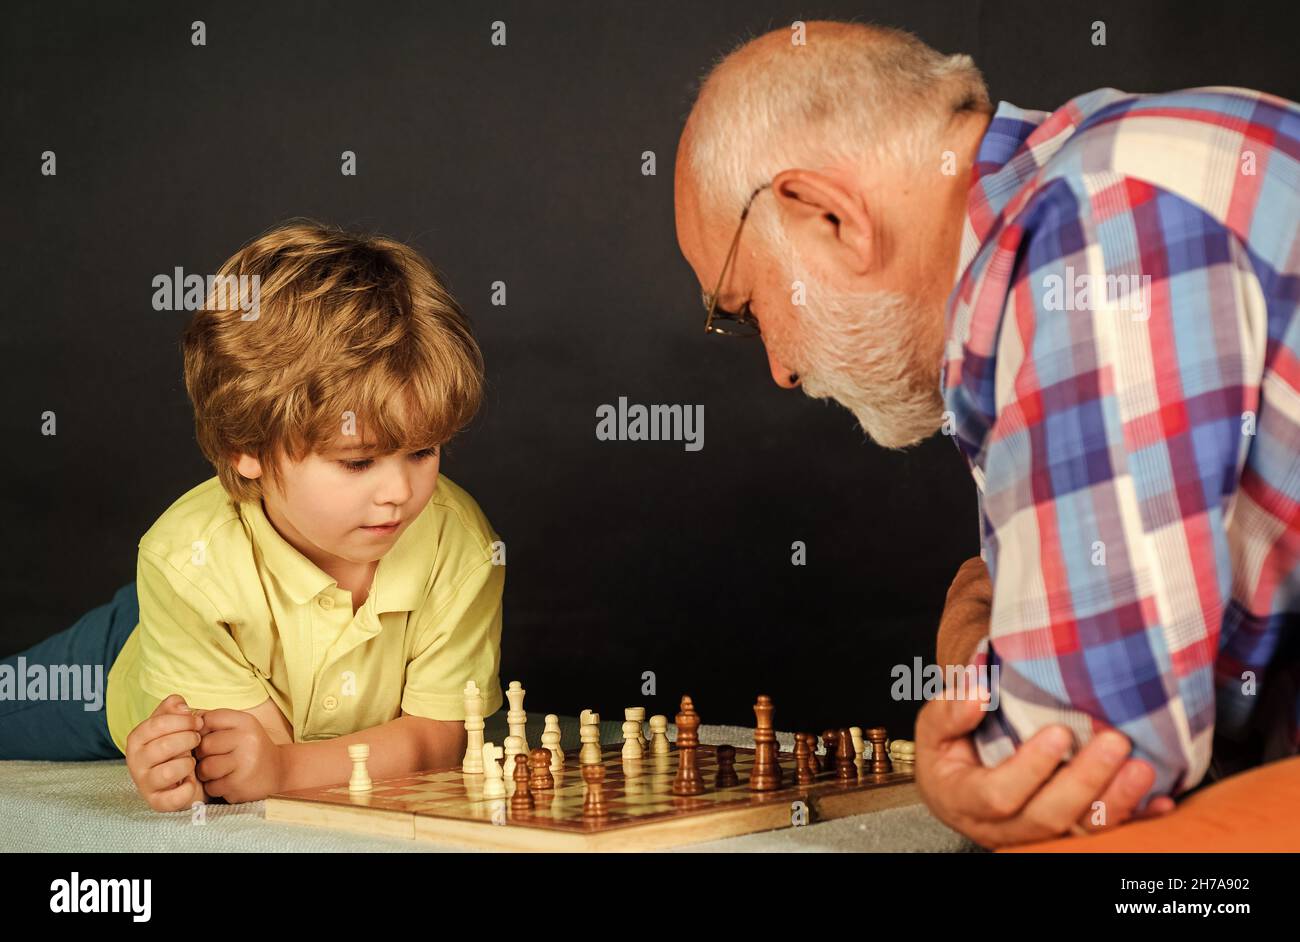 Relación familiar. El abuelo y el nieto juegan al ajedrez. Juego de mesa. Abuelo enseñando a nieta jugando ajedrez. Foto de stock